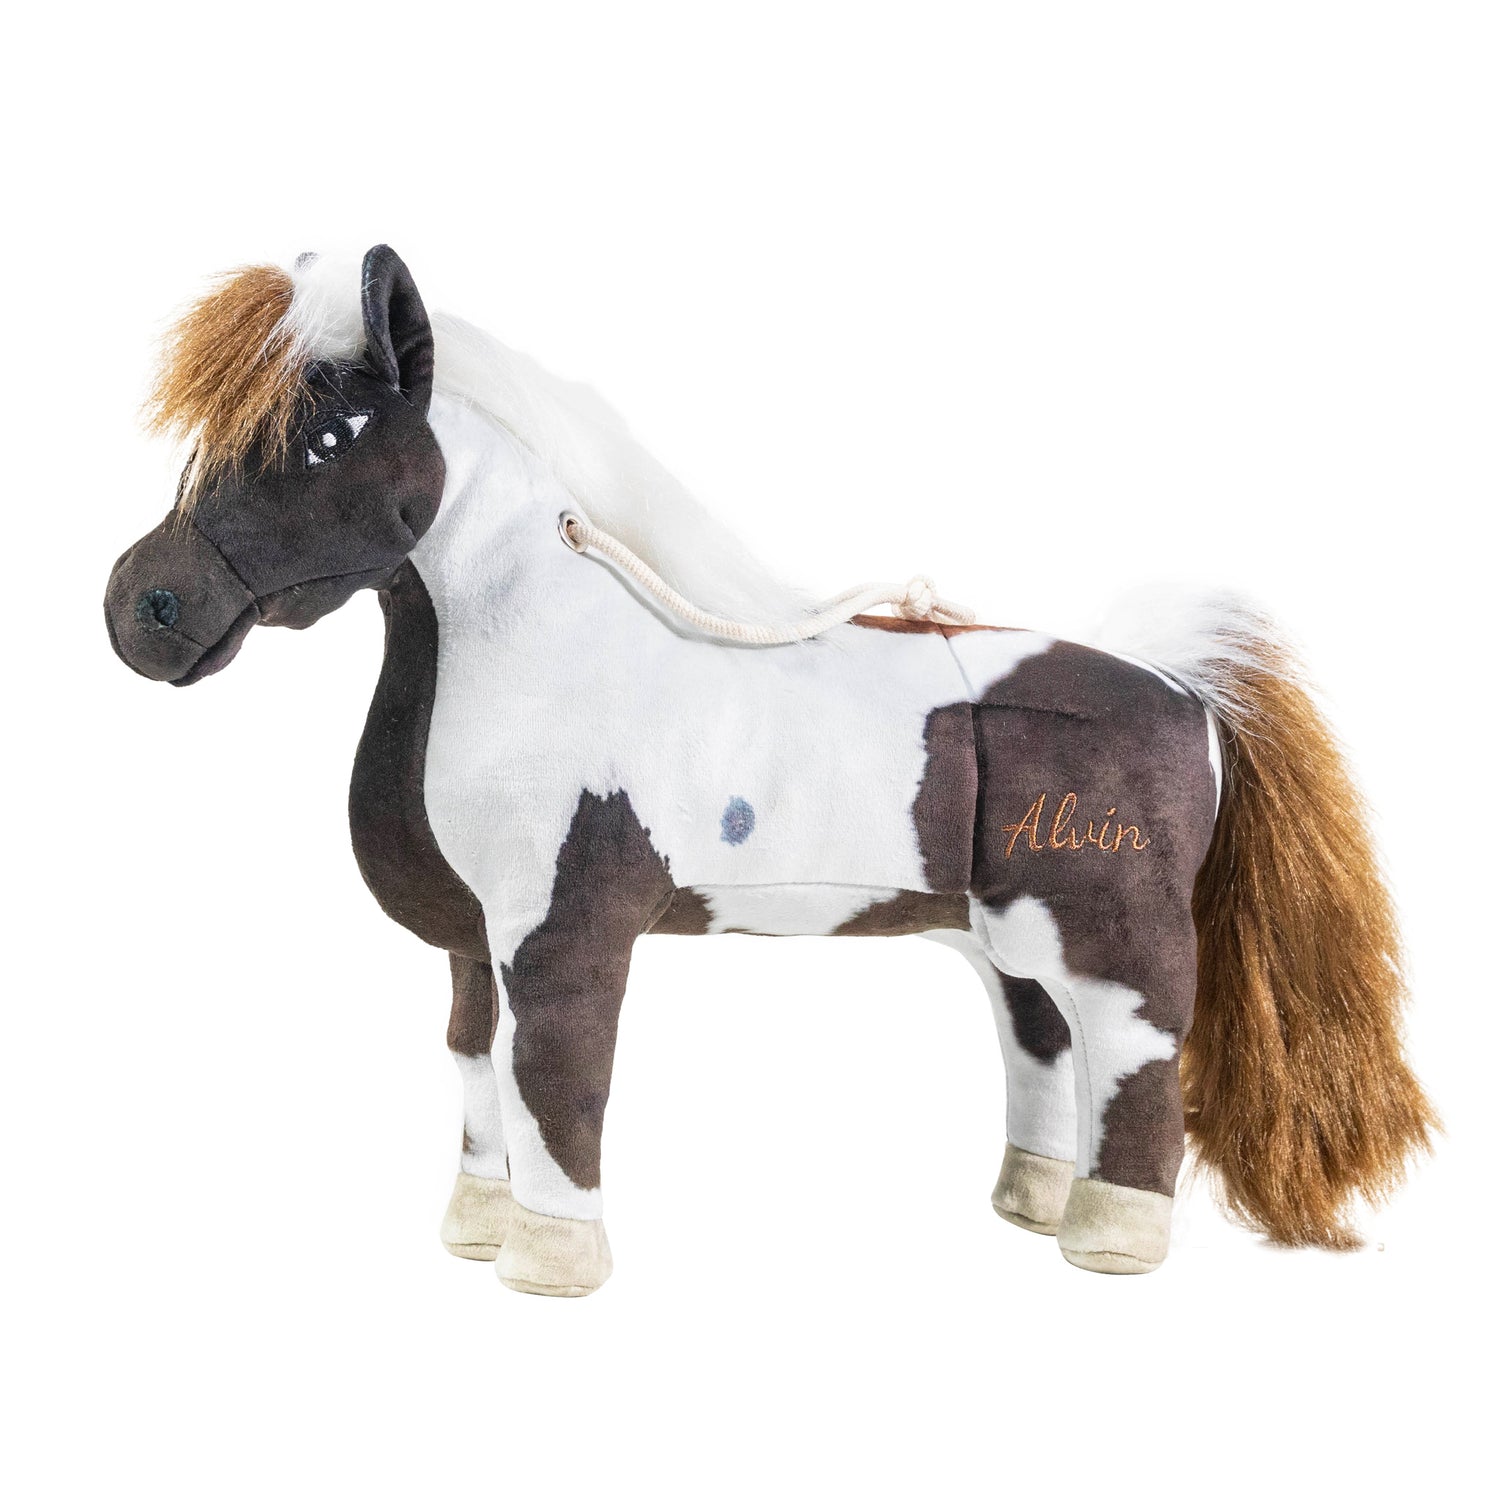 new Kentucky horse toy